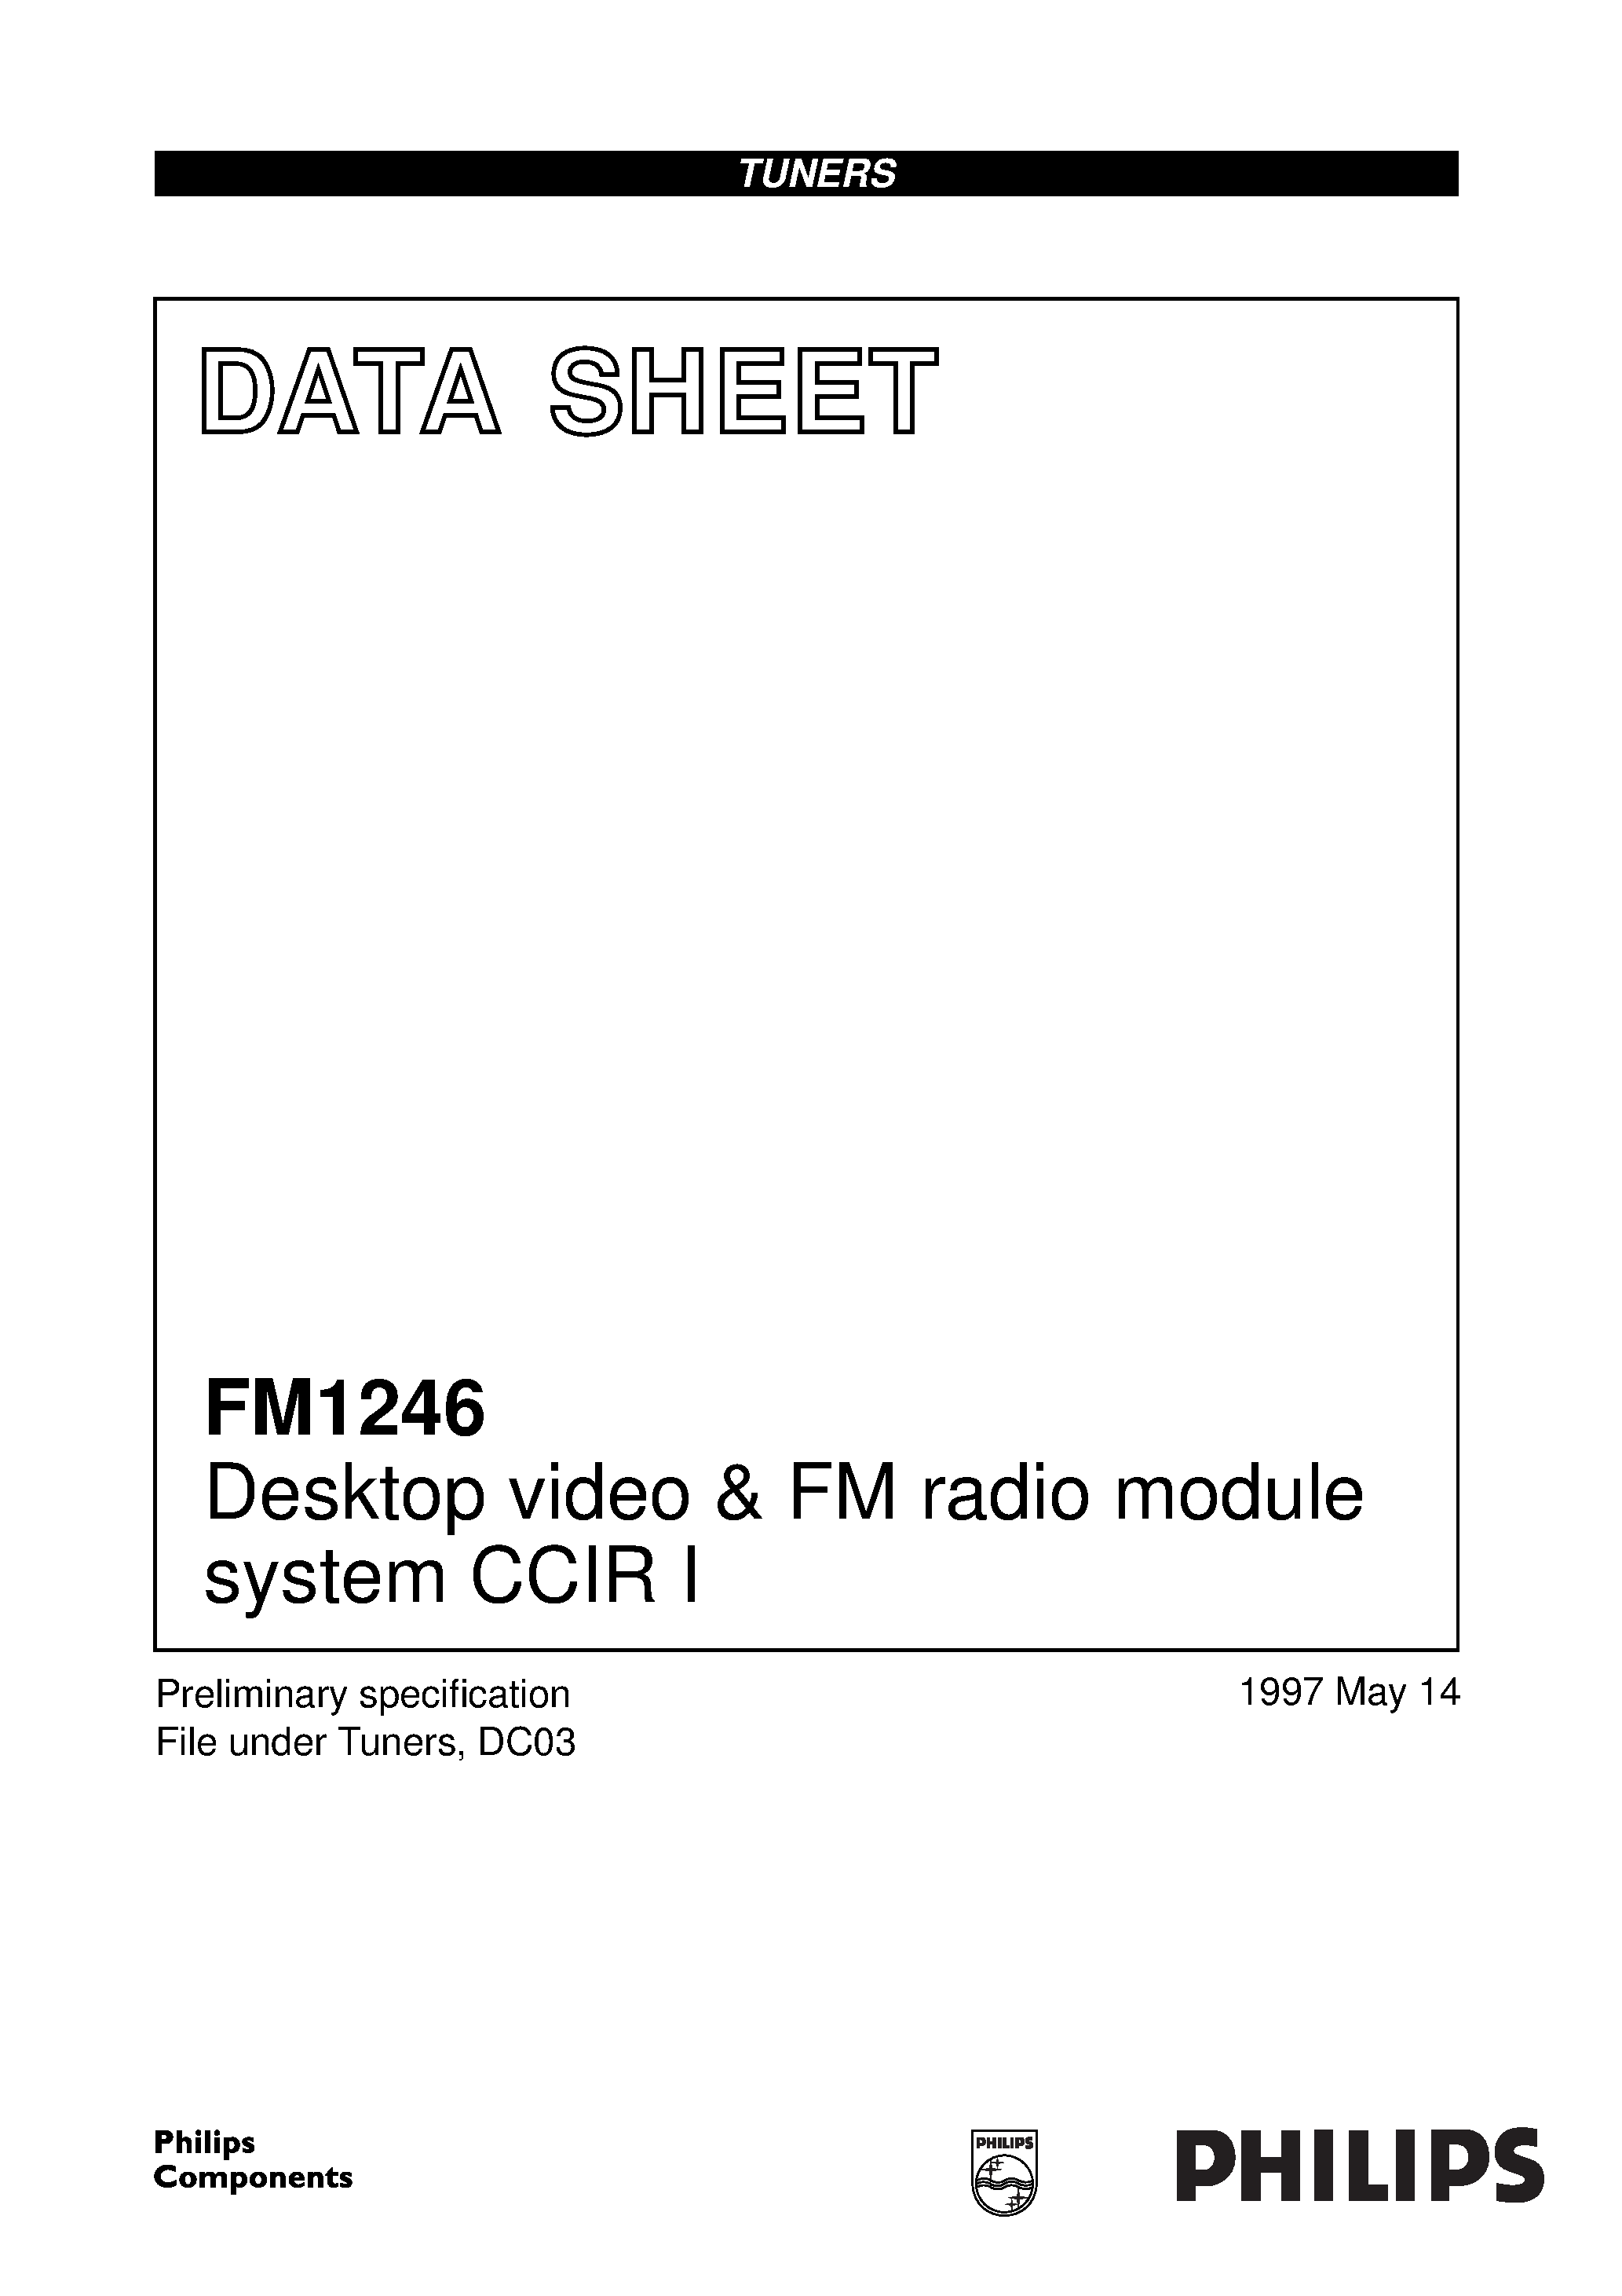 Даташит FM1246 - Desktop video & FM radio module system CCIR I страница 1